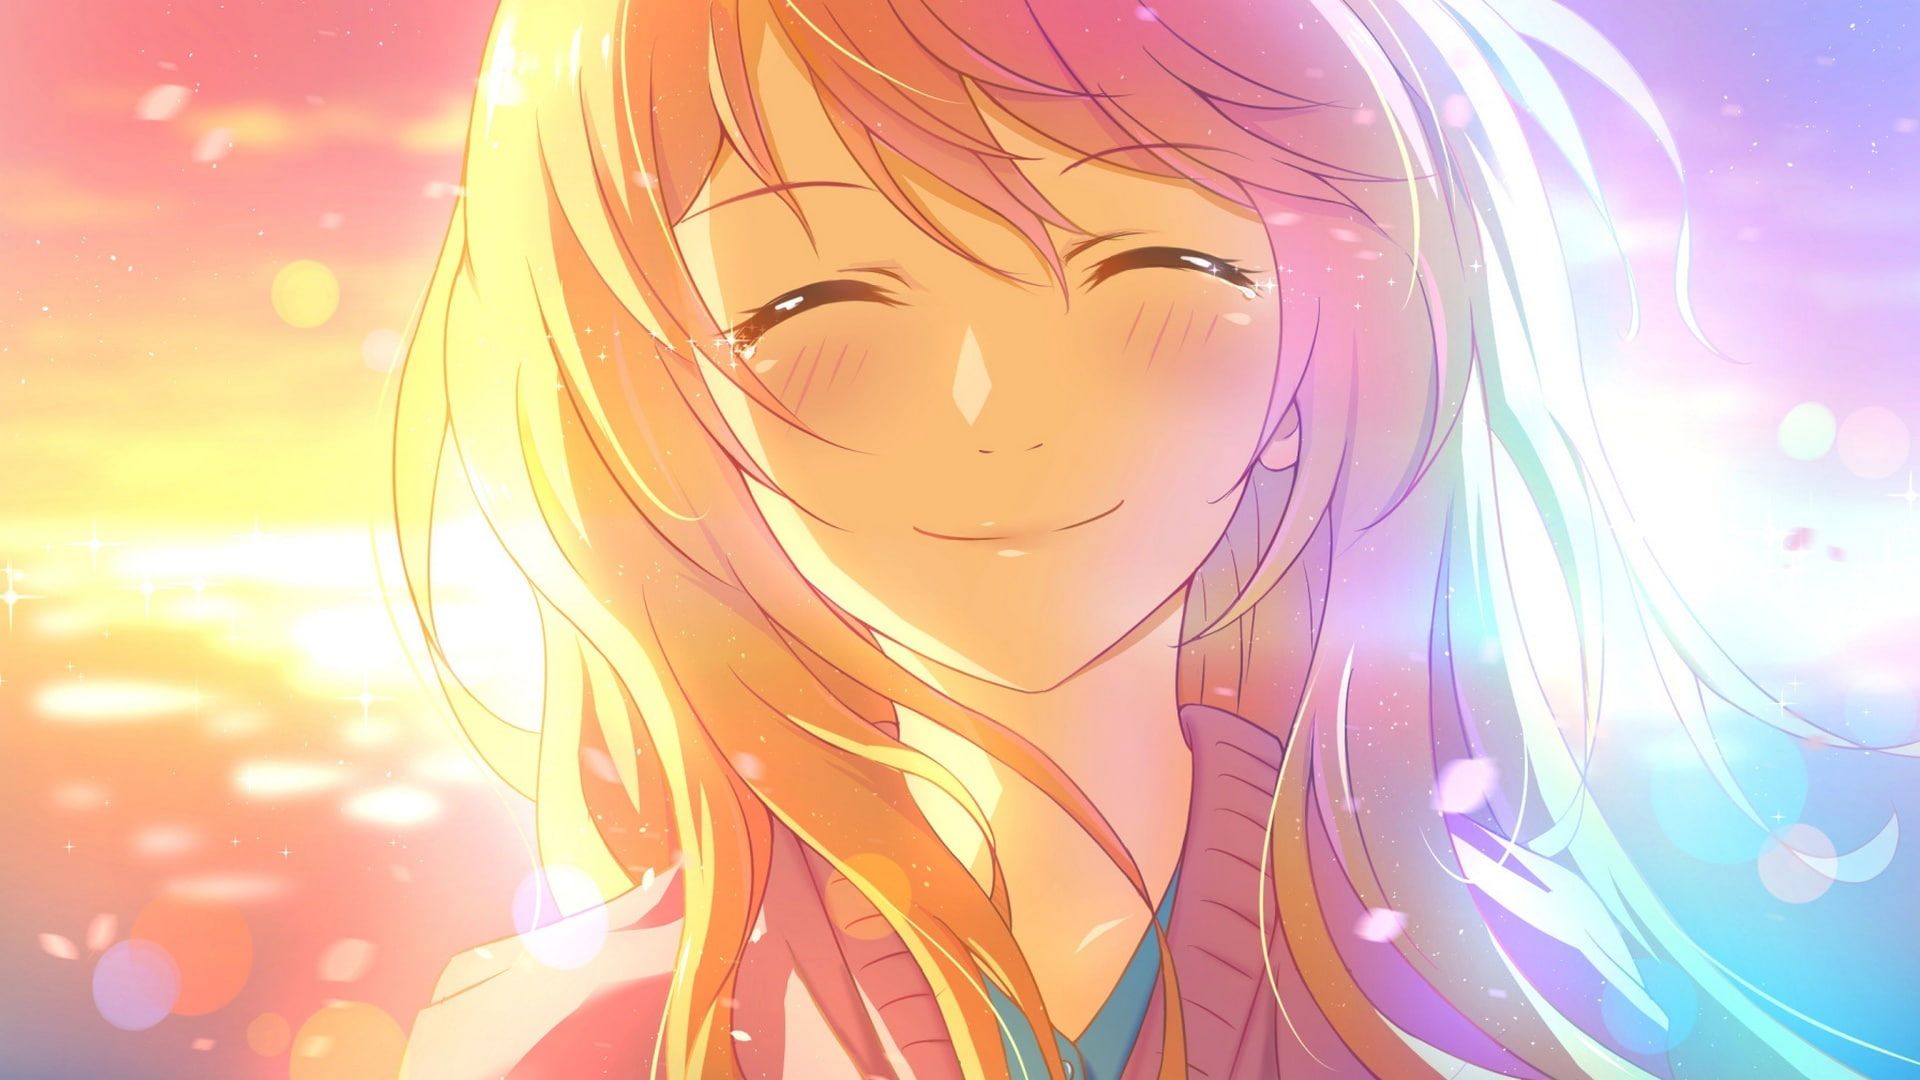 Girl wallpaper, smile, angel, cute, anime girl • Wallpaper For You HD Wallpaper For Desktop & Mobile